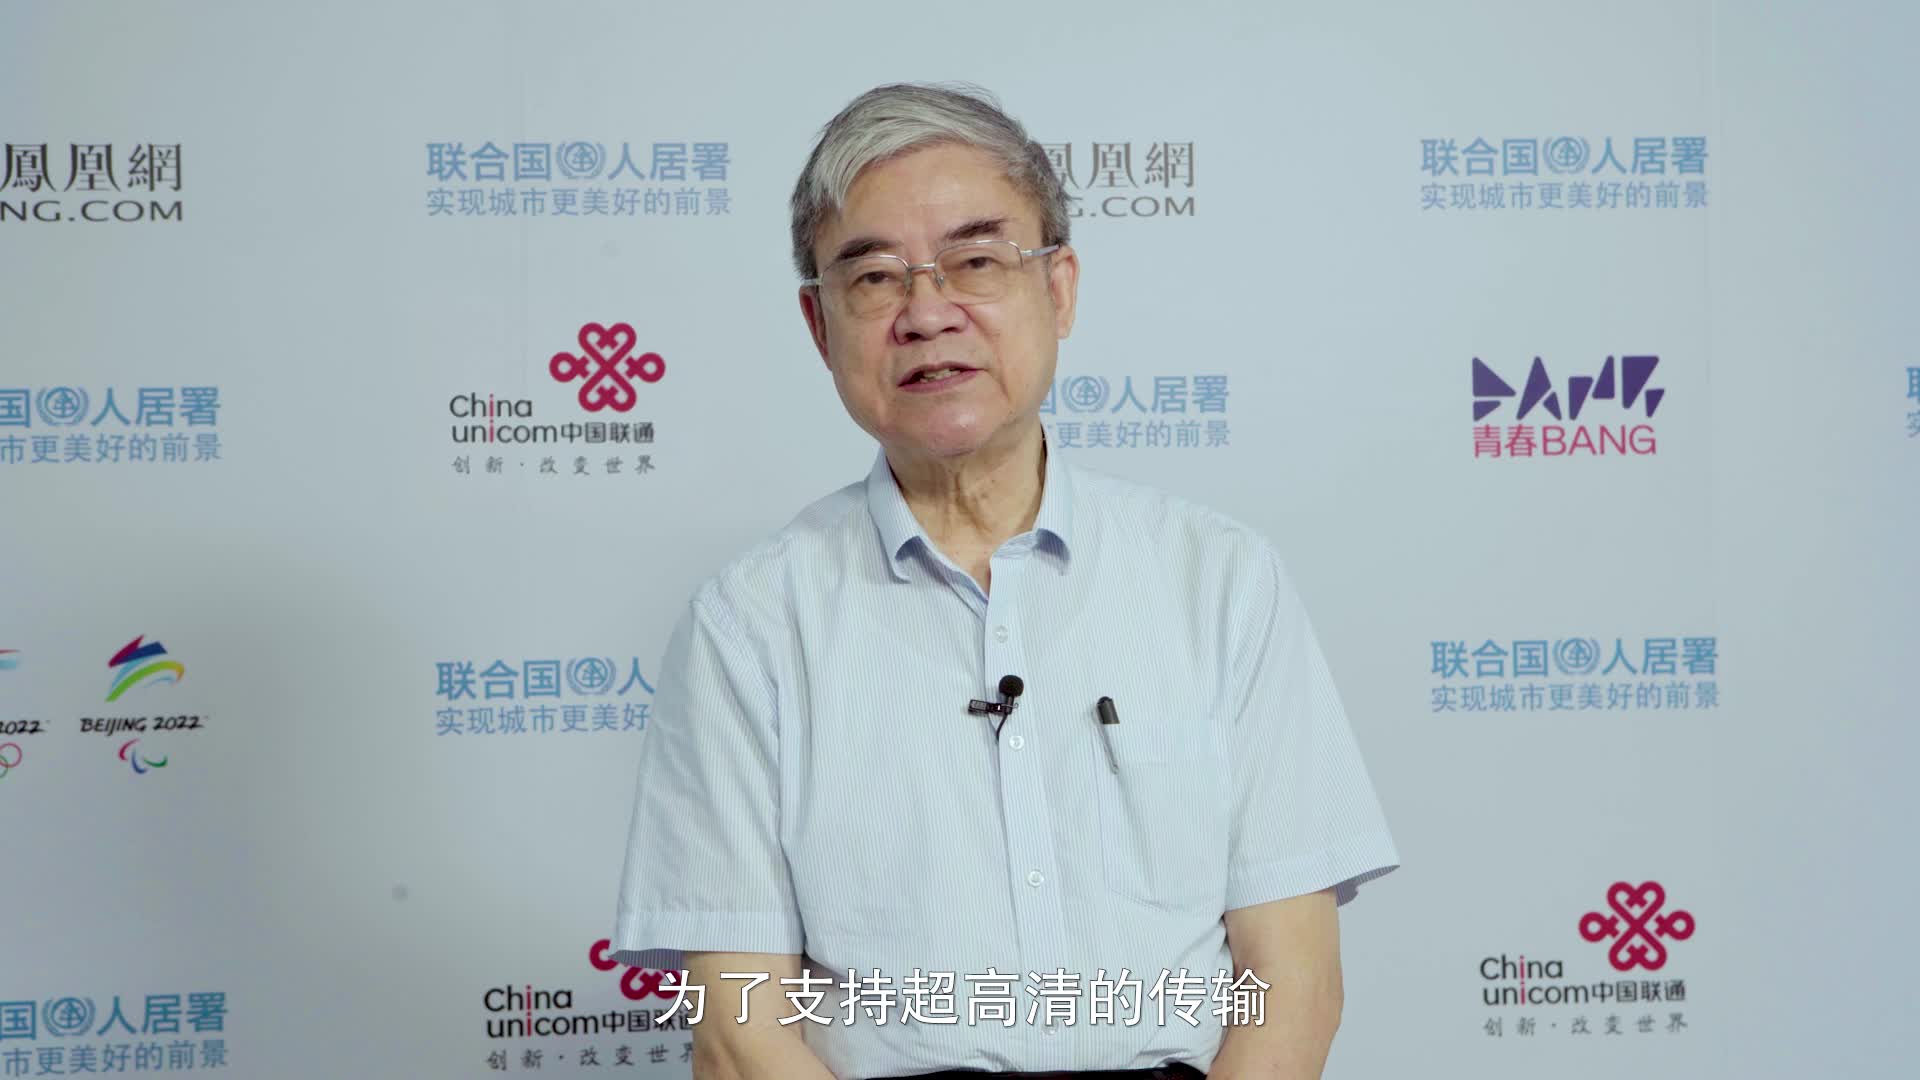 冬梦大使创意挑战赛对话5G专家、中国工程院院士邬贺铨